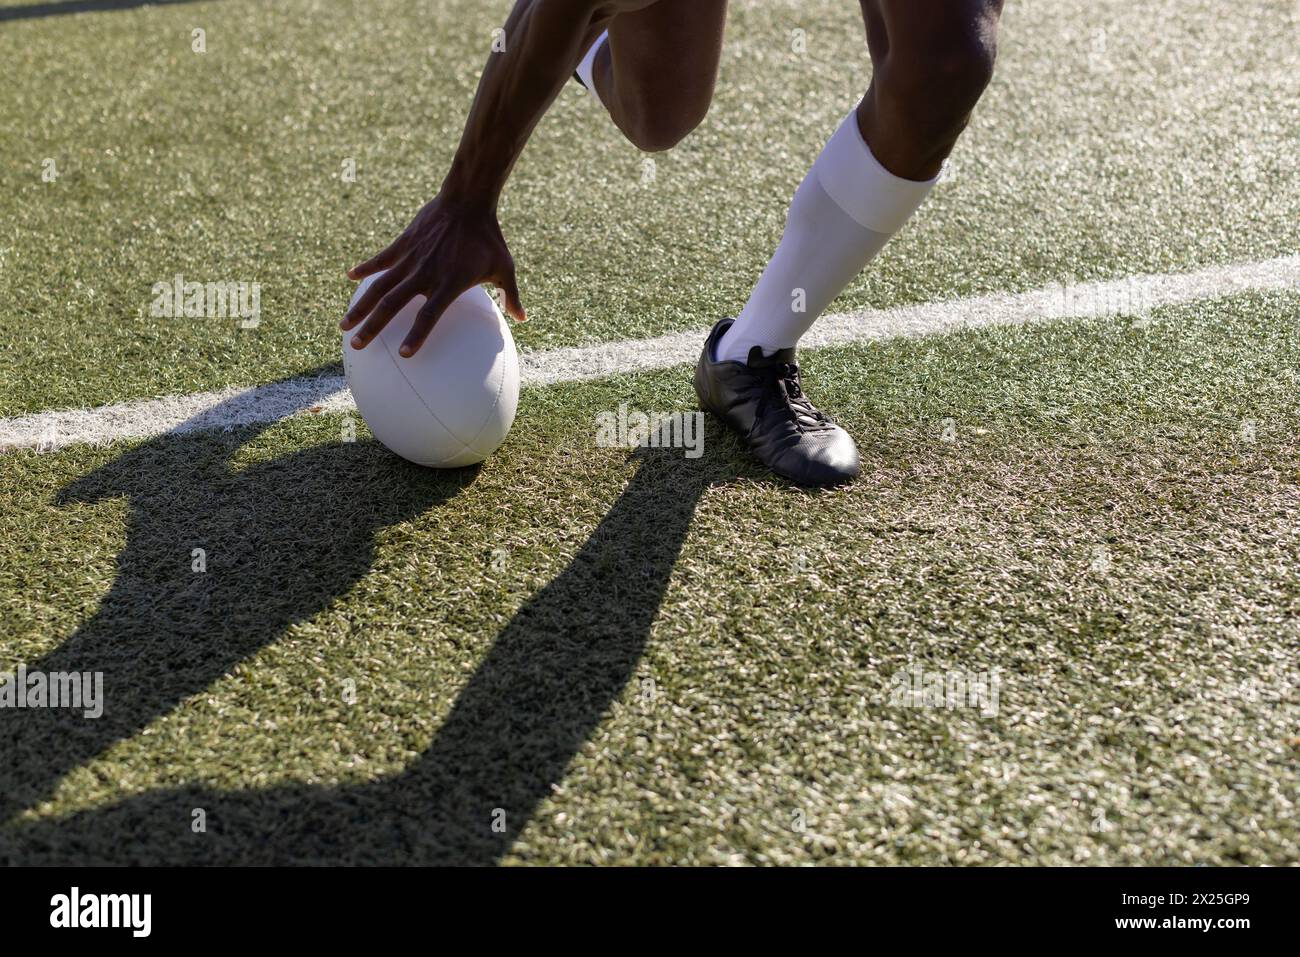 Un giovane atleta afroamericano che indossa articoli sportivi sta mettendo una palla da rugby sull'erba Foto Stock